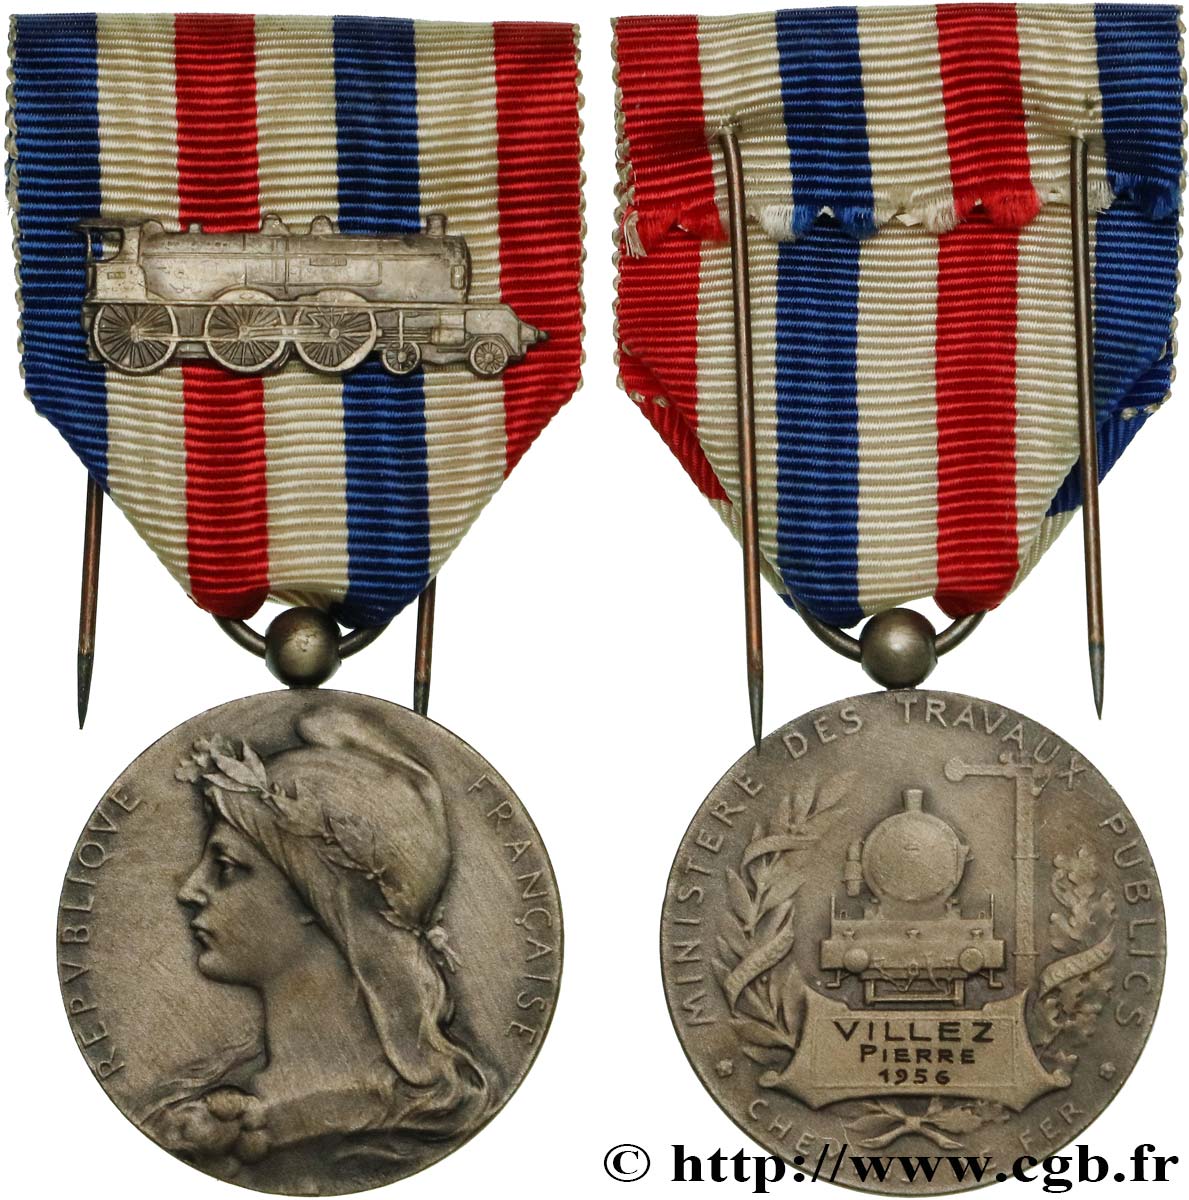 CUARTA REPUBLICA FRANCESA Médaille des Chemins de Fer, Ministère des travaux publics MBC